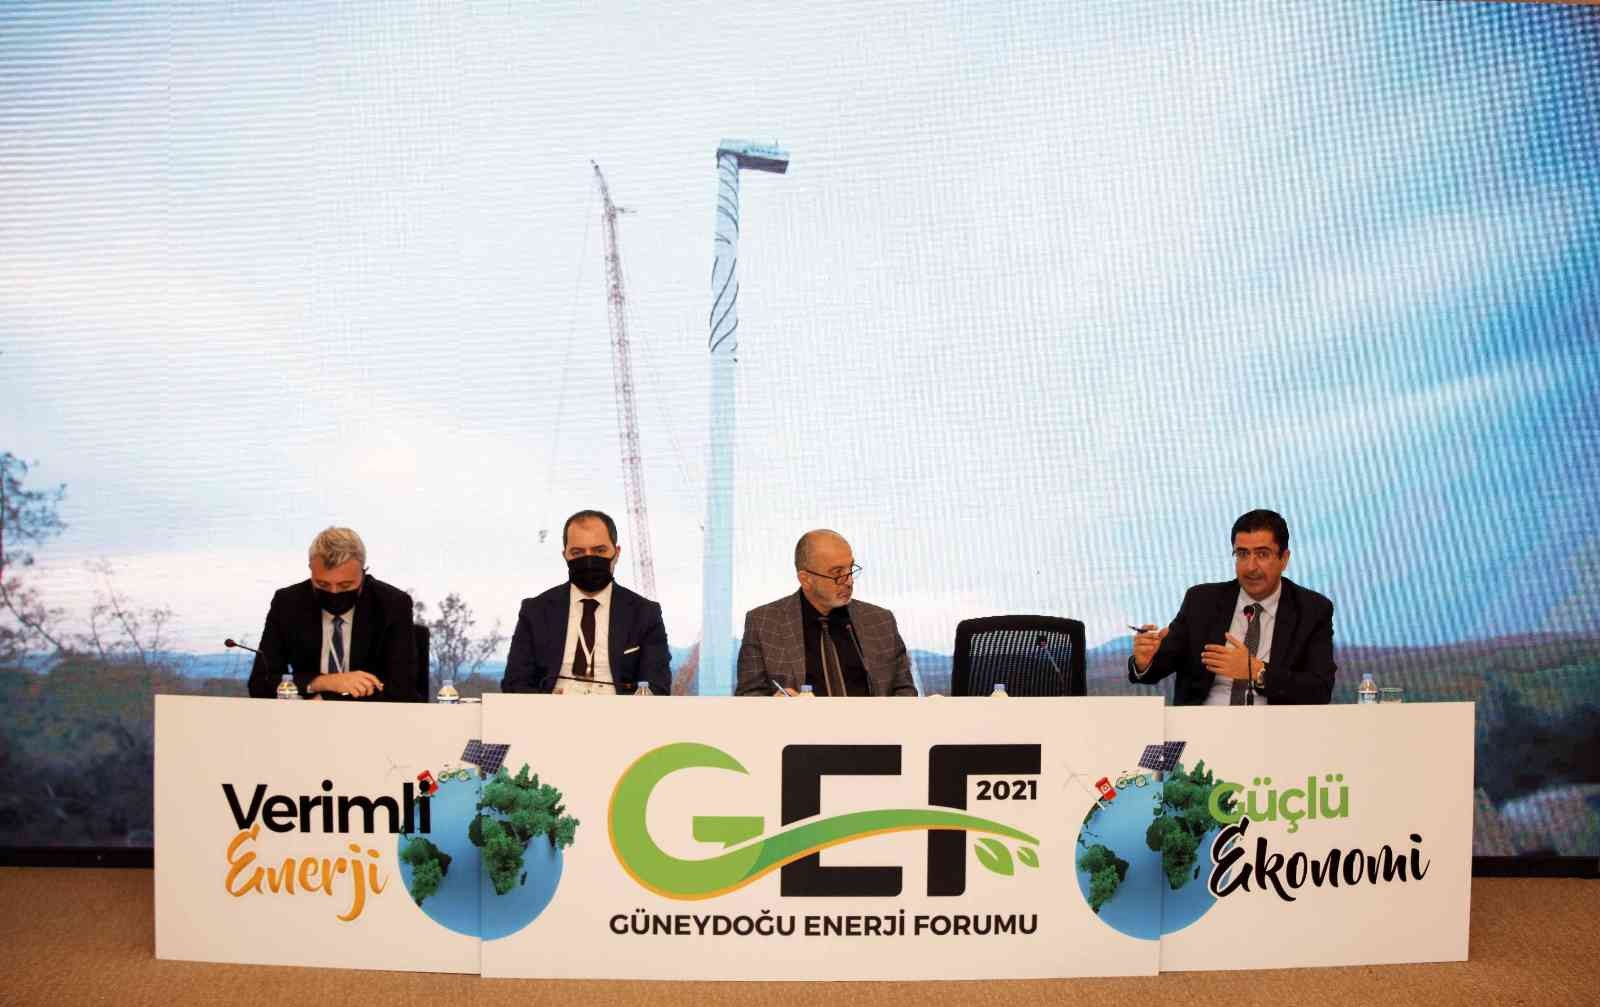 Güneydoğu Enerji Forumu Gaziantep’te yapıldı #gaziantep